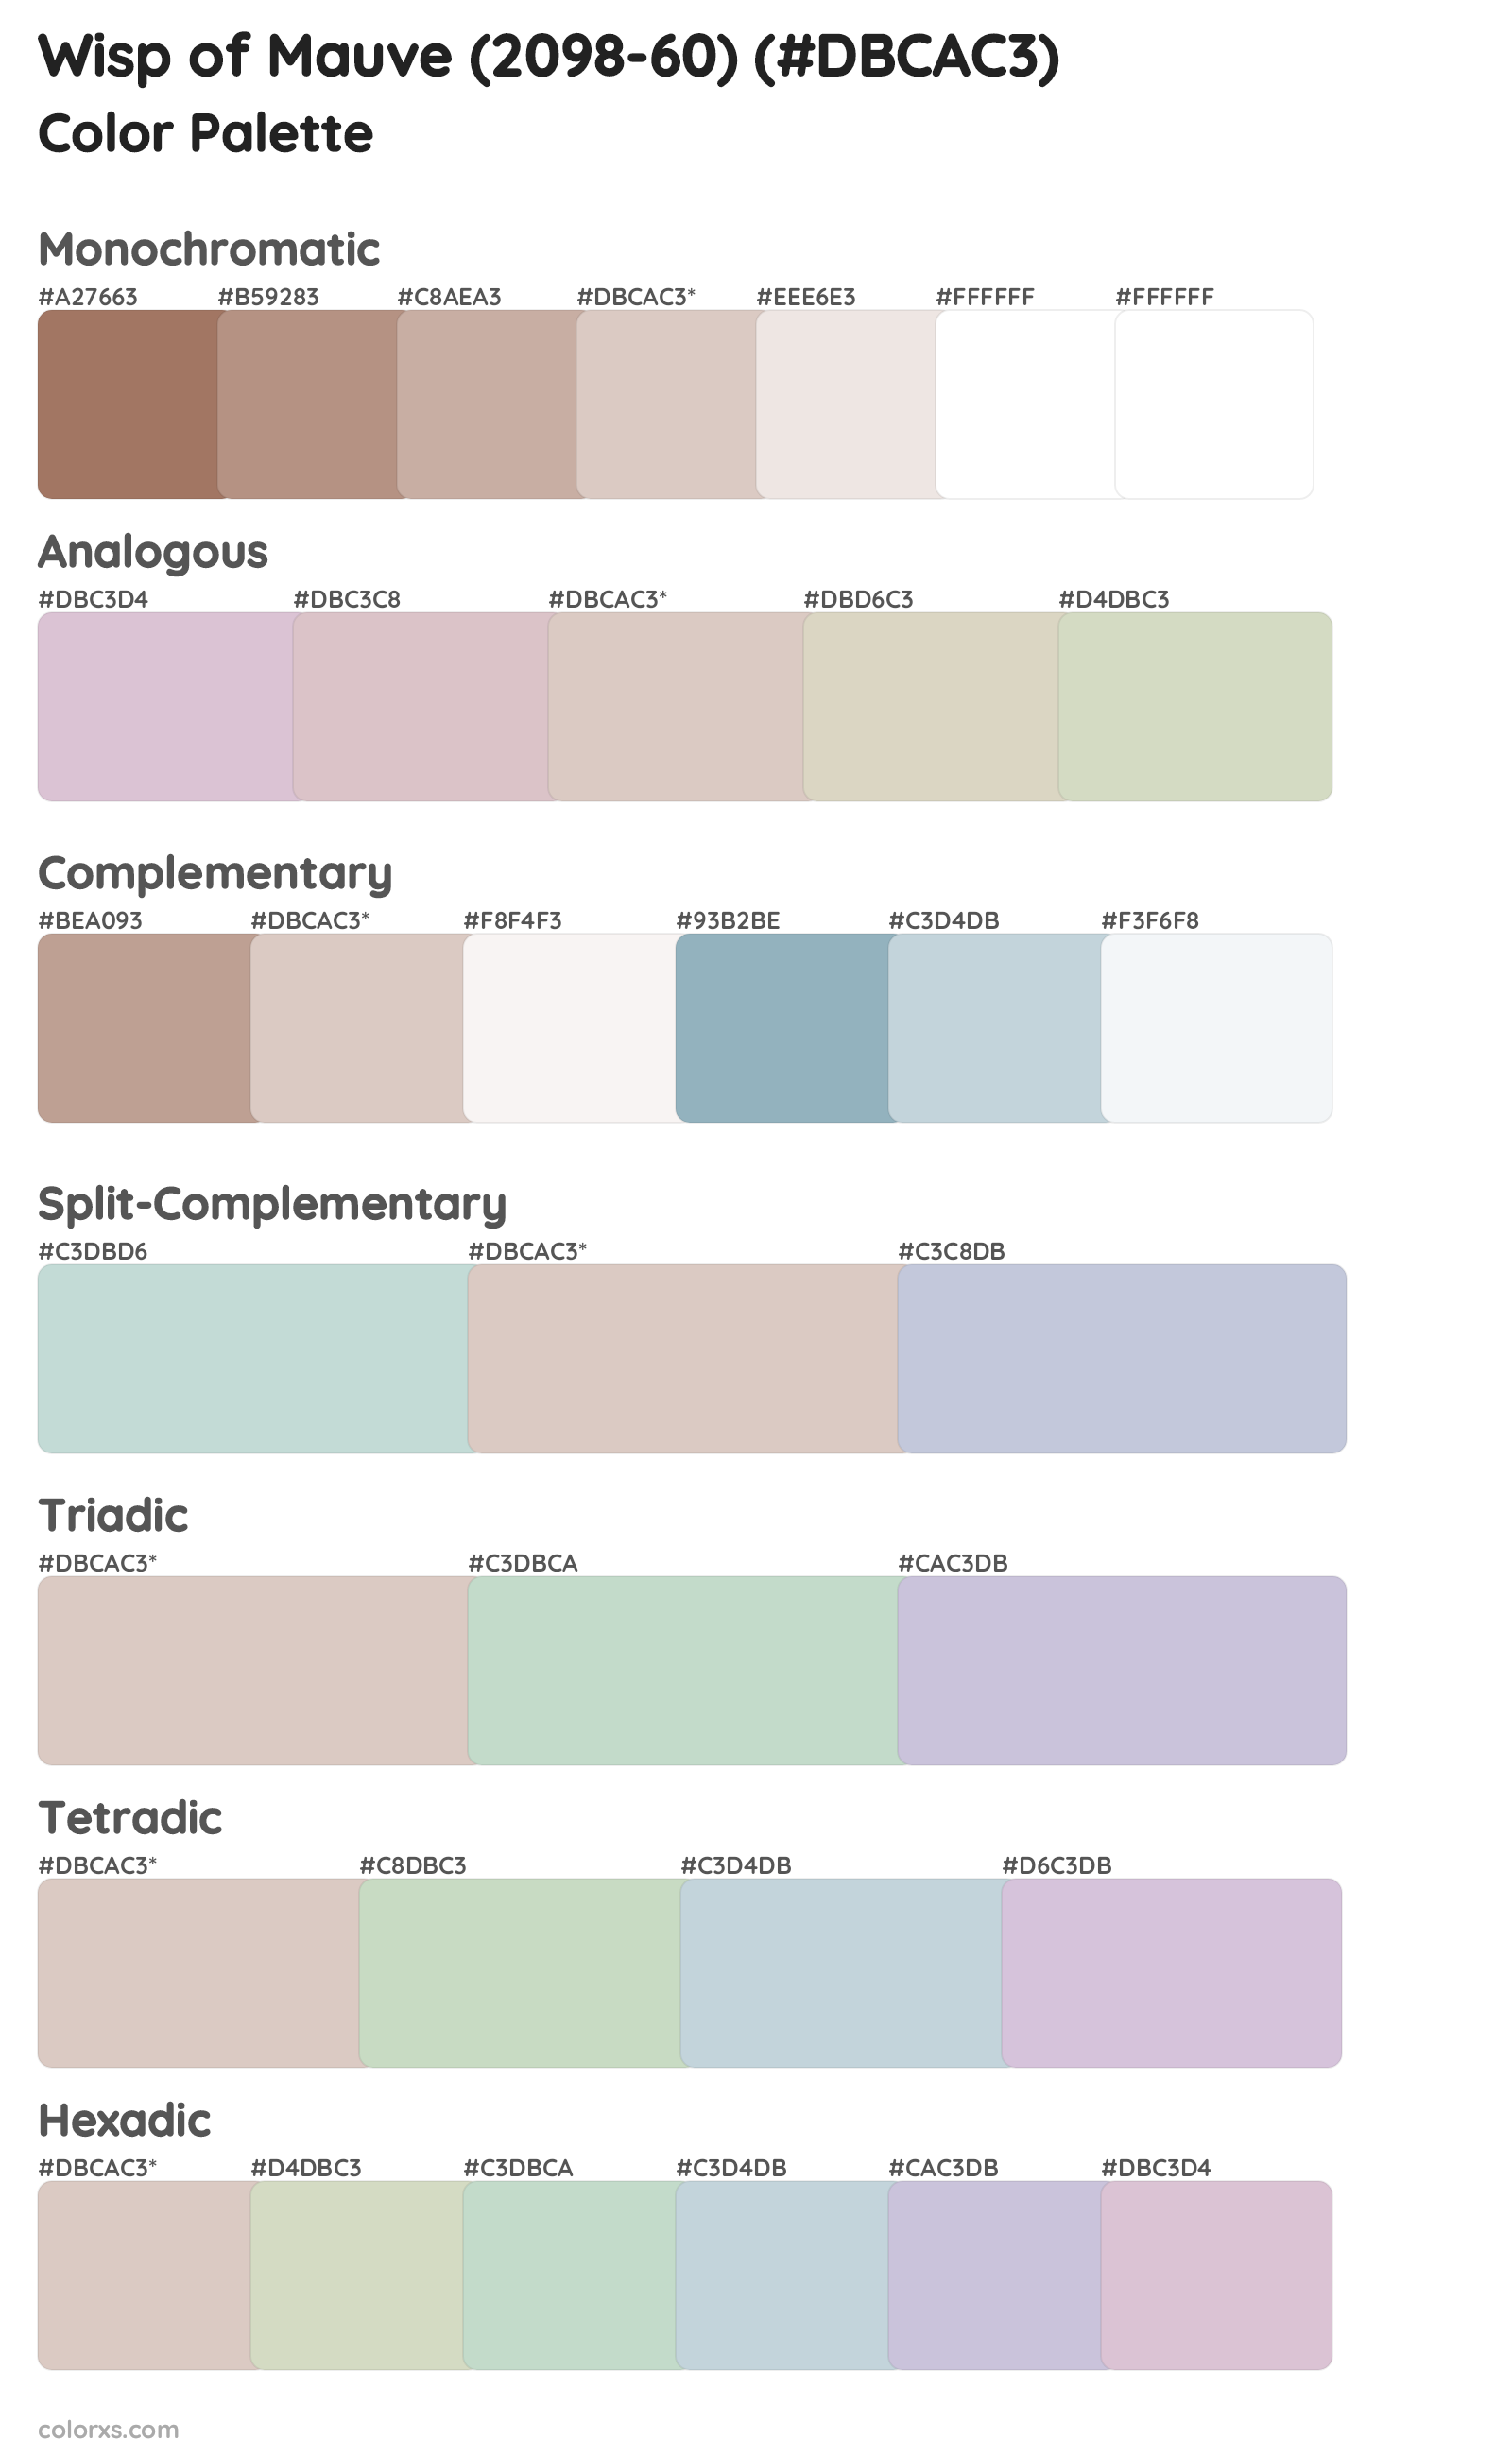 Wisp of Mauve (2098-60) Color Scheme Palettes